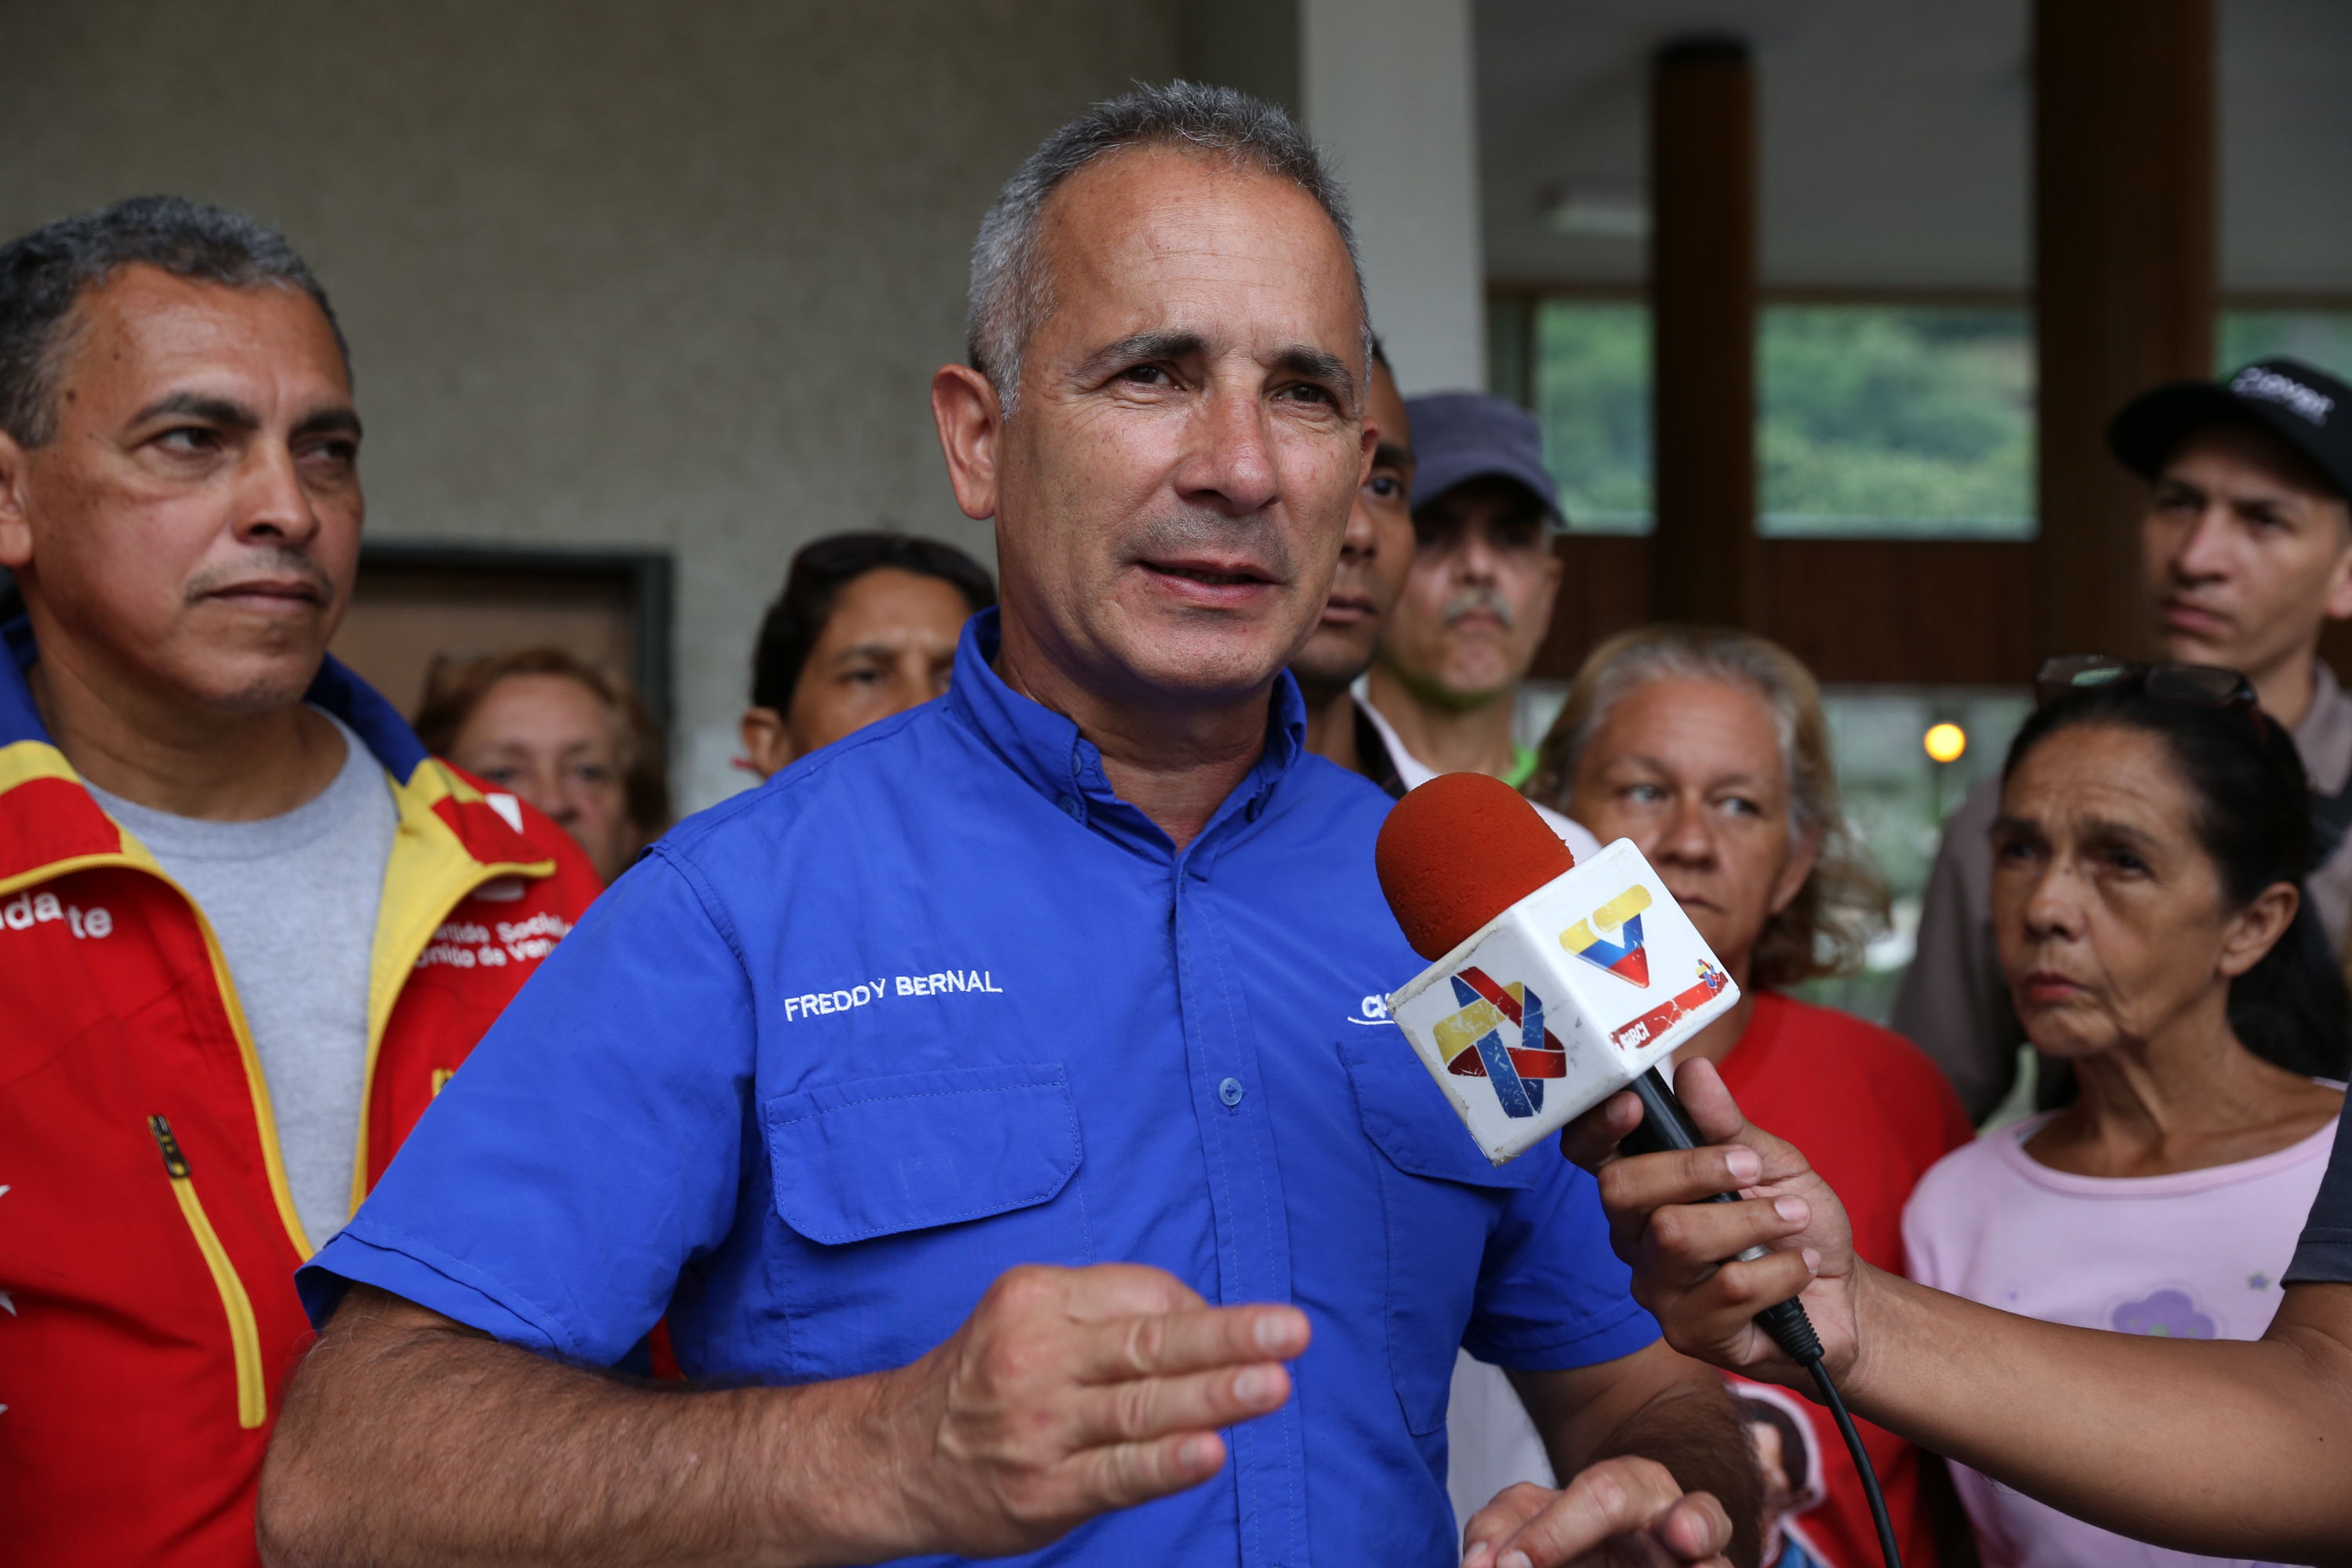 Freddy Bernal: Tomaremos las cuatro esquinas de la Asamblea Nacional (Video)